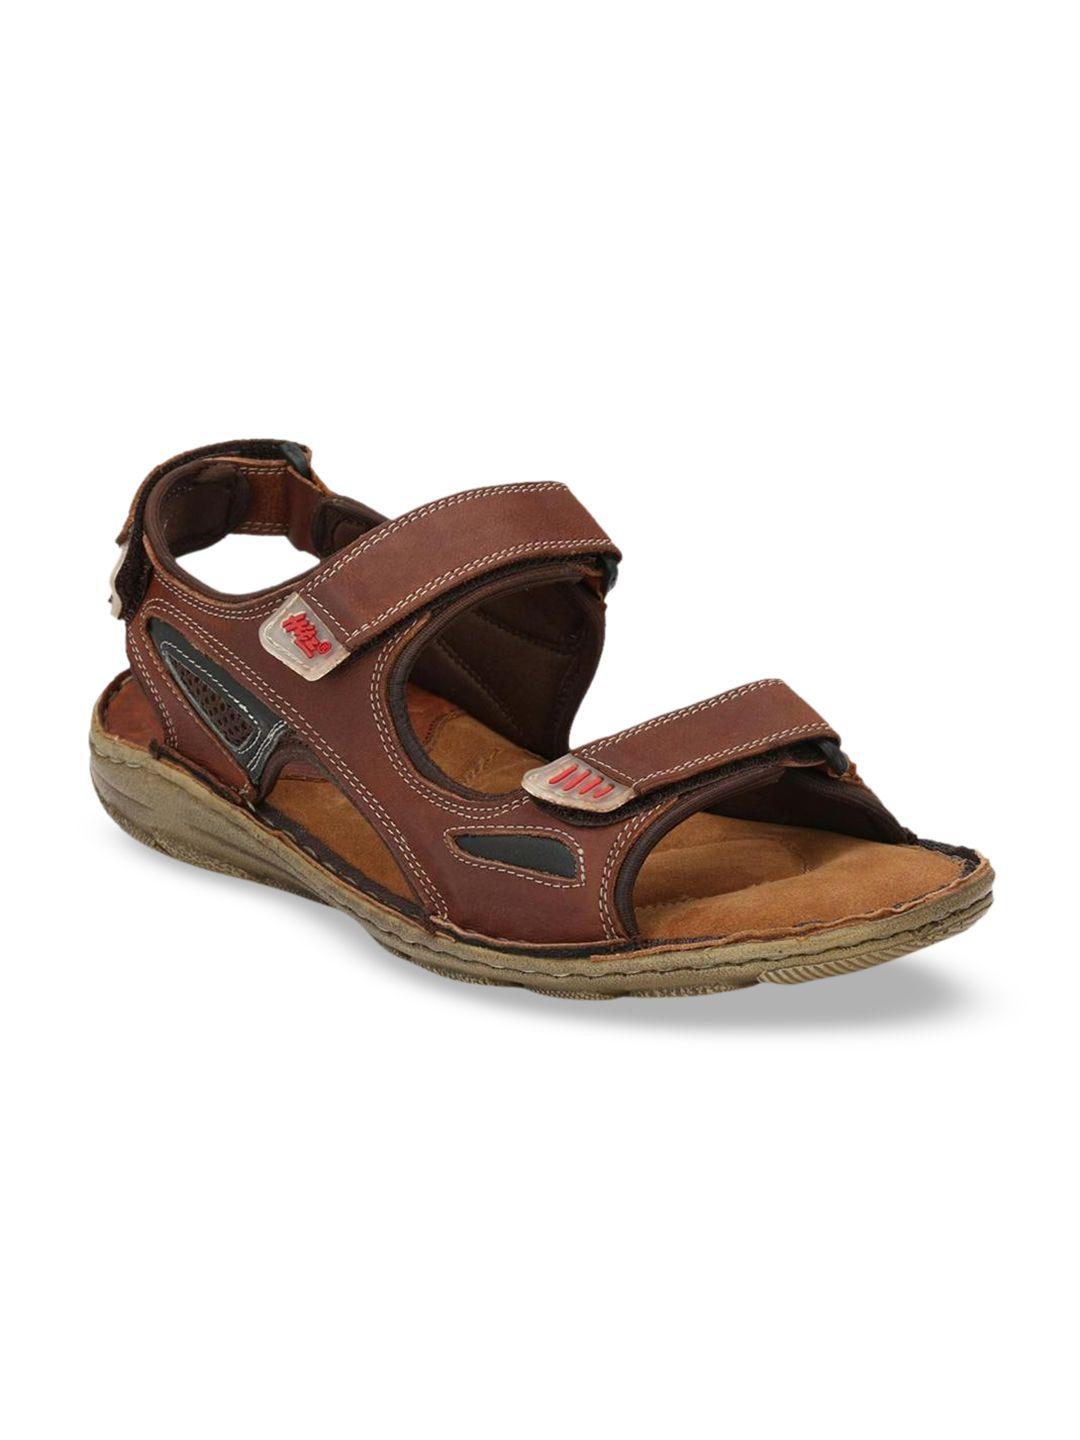 hitz men tan brown leather comfort sandals